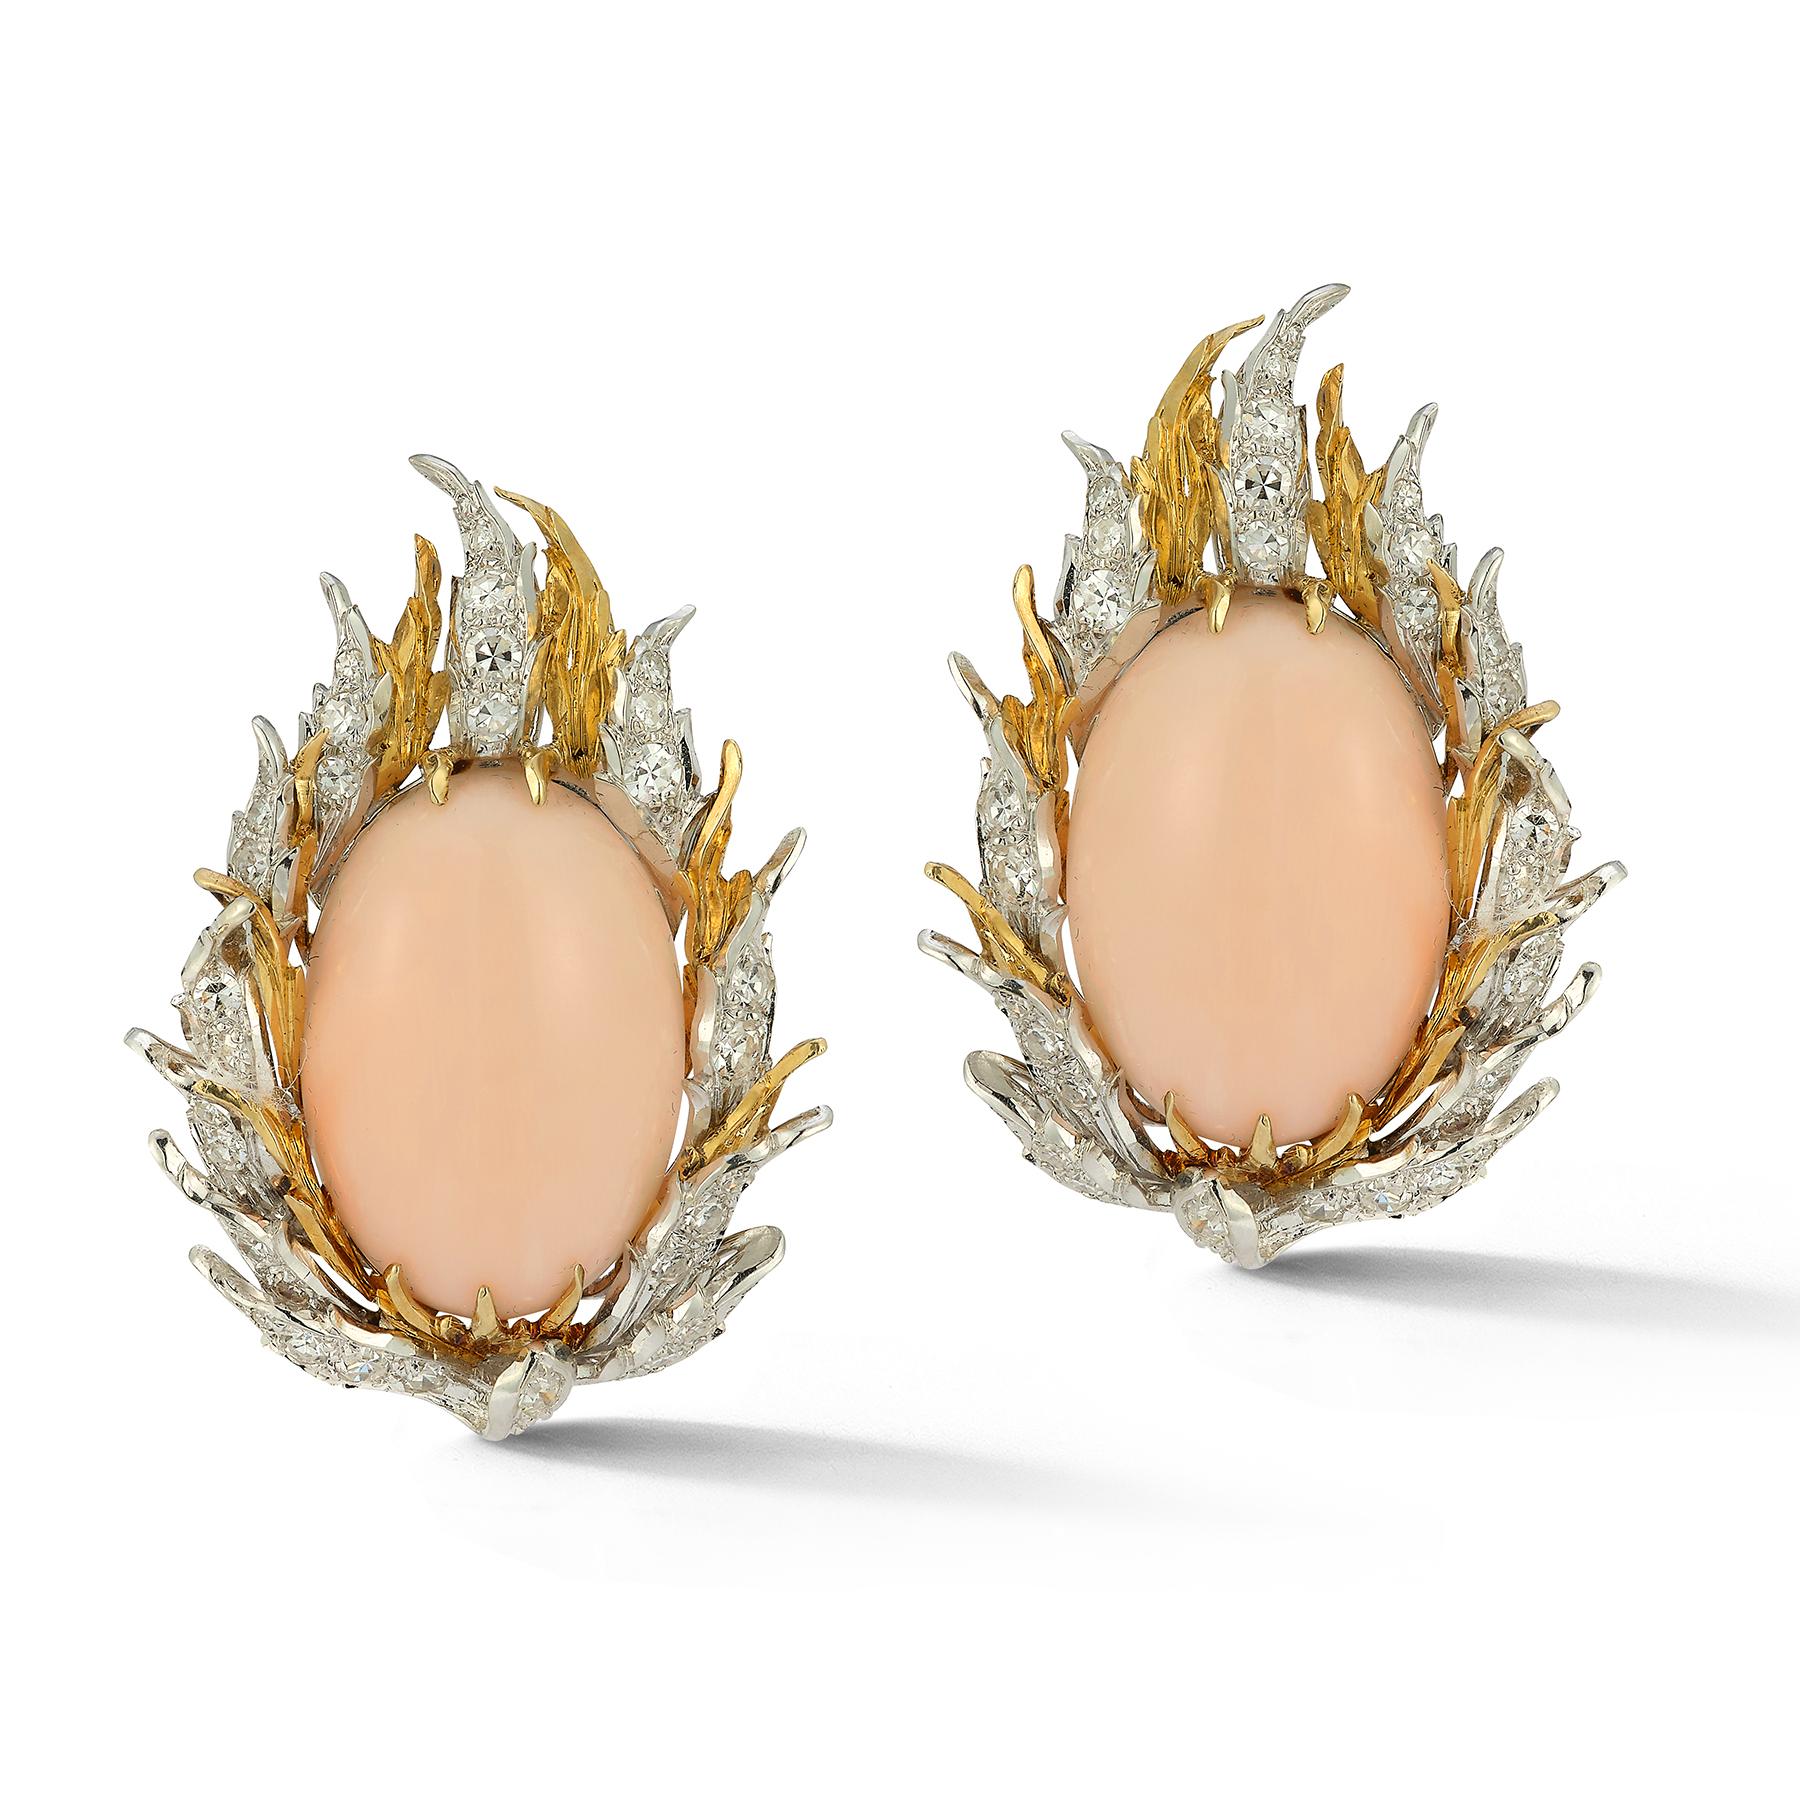 Buccellati - Boucles d'oreilles peau d'ange en corail cabochon et diamants

2 coraux cabochons entourés de diamants ronds sertis en or blanc et jaune 18k.

Dimensions : 1.5